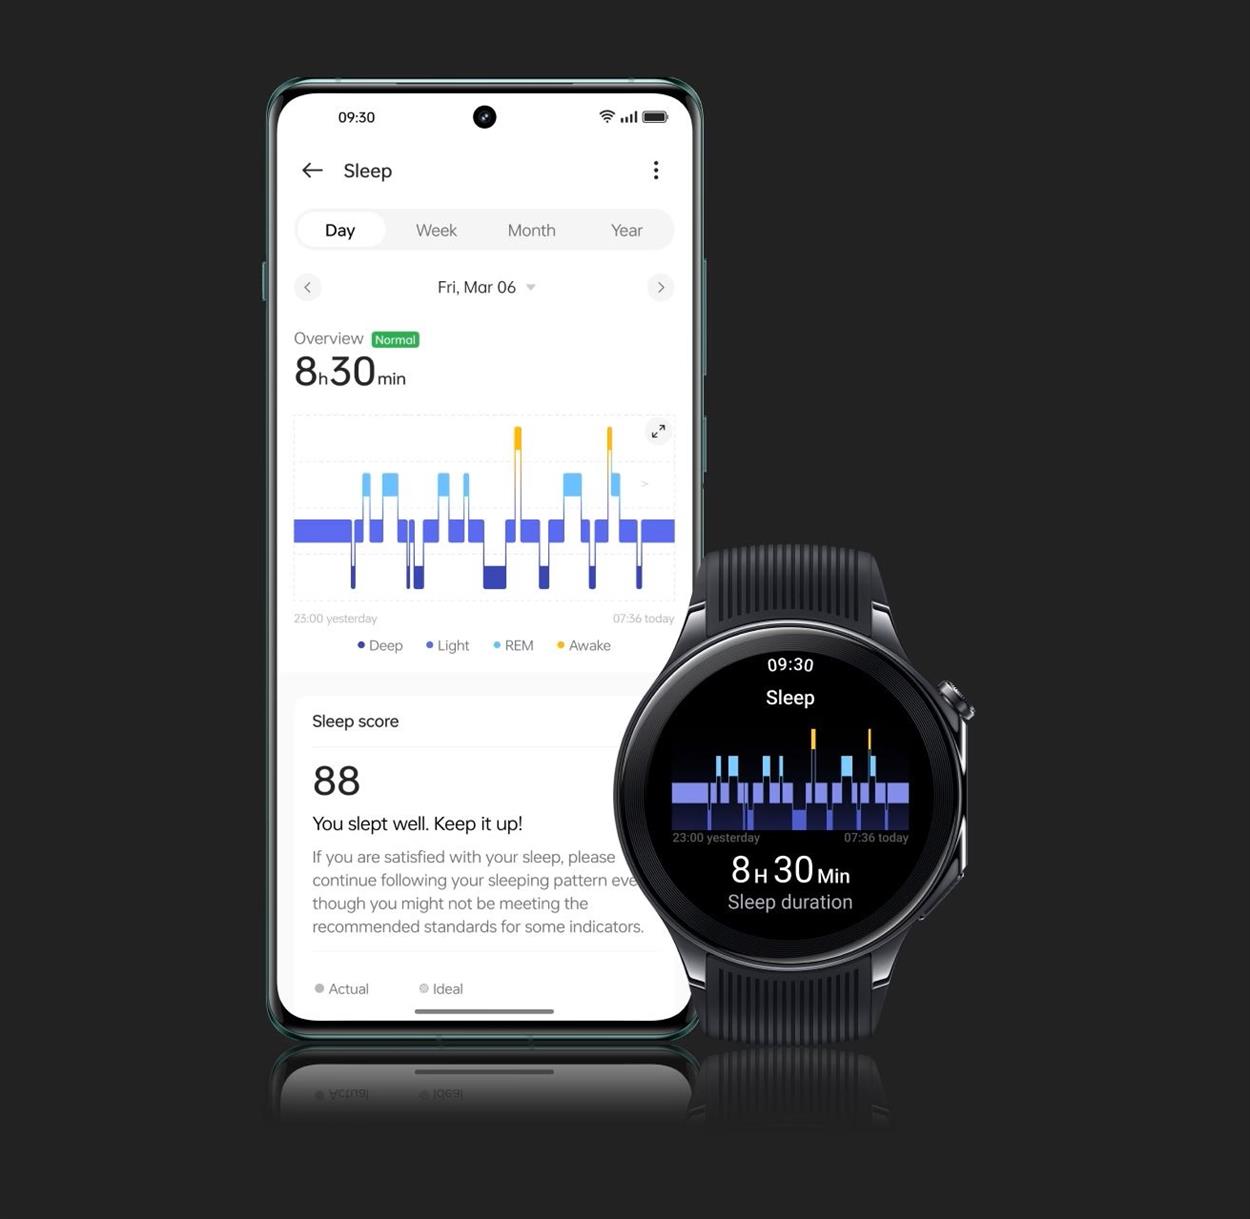 OnePlus Watch 2 Smartwatch